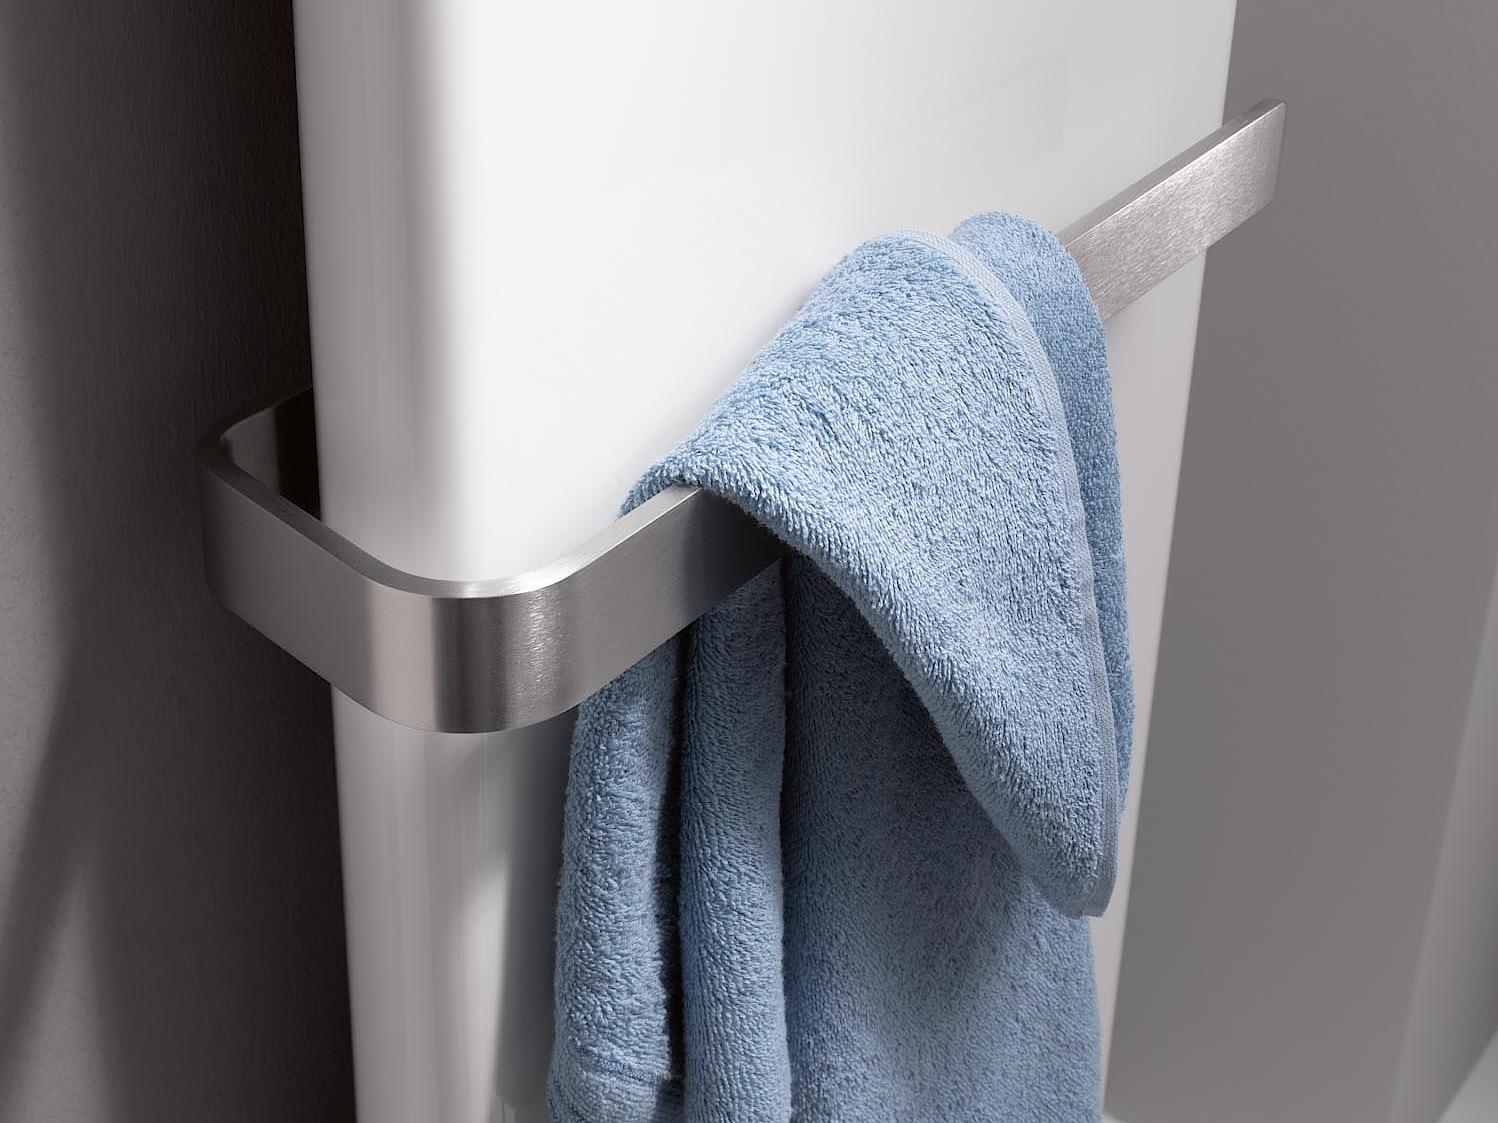 Radiateur design et de salle de bain Pateo de Kermi barre porte-serviettes en acier inoxydable brossé.